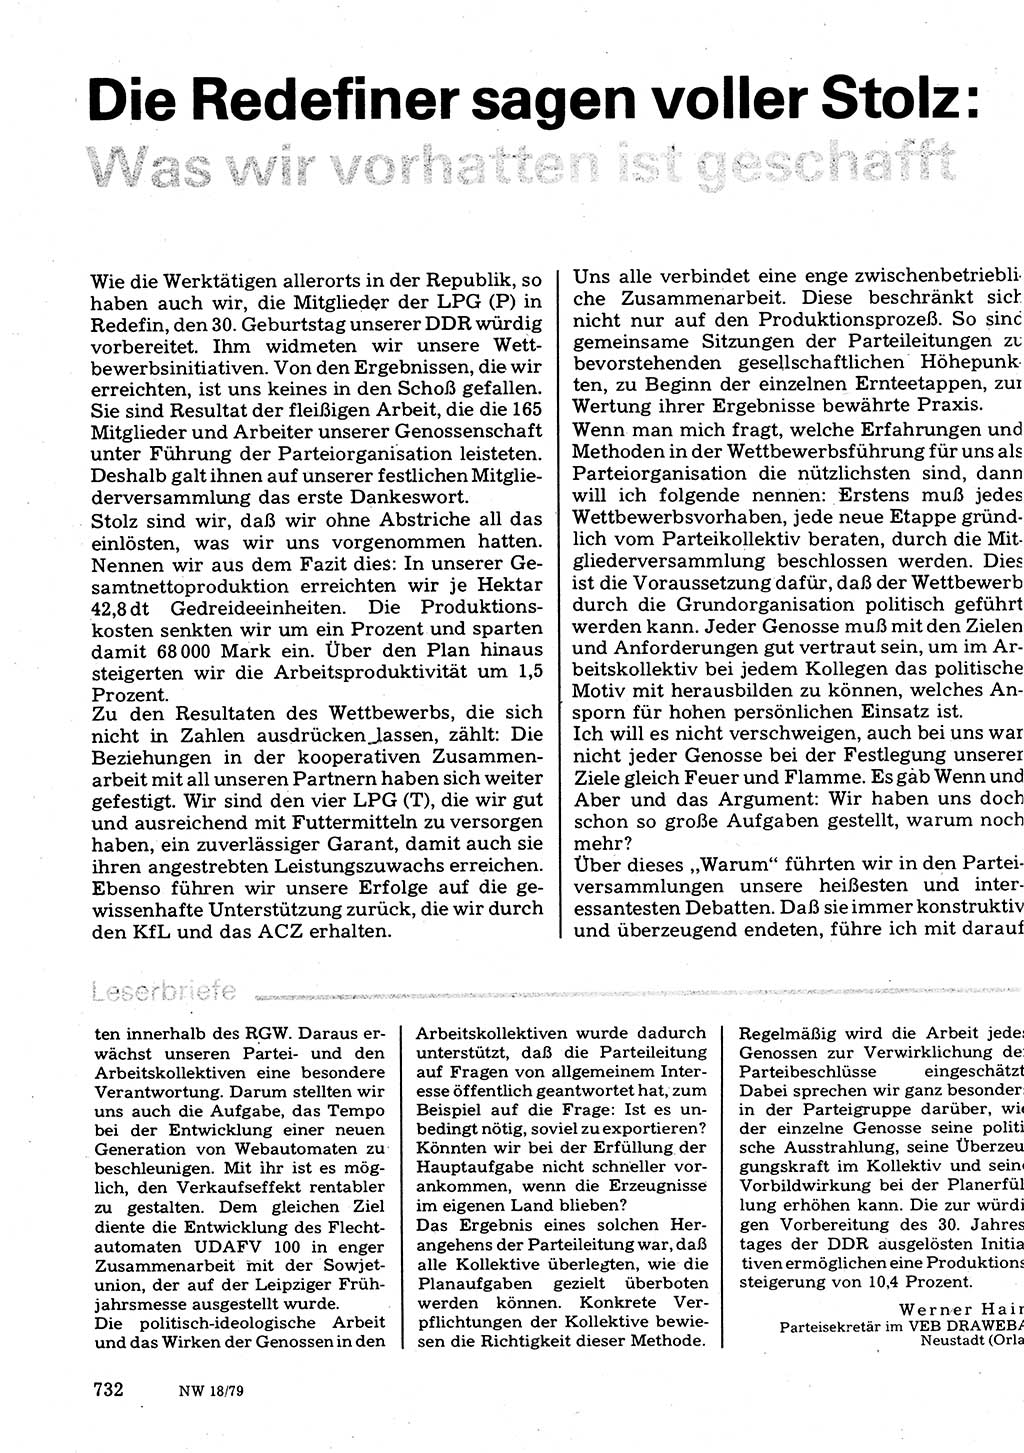 Neuer Weg (NW), Organ des Zentralkomitees (ZK) der SED (Sozialistische Einheitspartei Deutschlands) für Fragen des Parteilebens, 34. Jahrgang [Deutsche Demokratische Republik (DDR)] 1979, Seite 732 (NW ZK SED DDR 1979, S. 732)